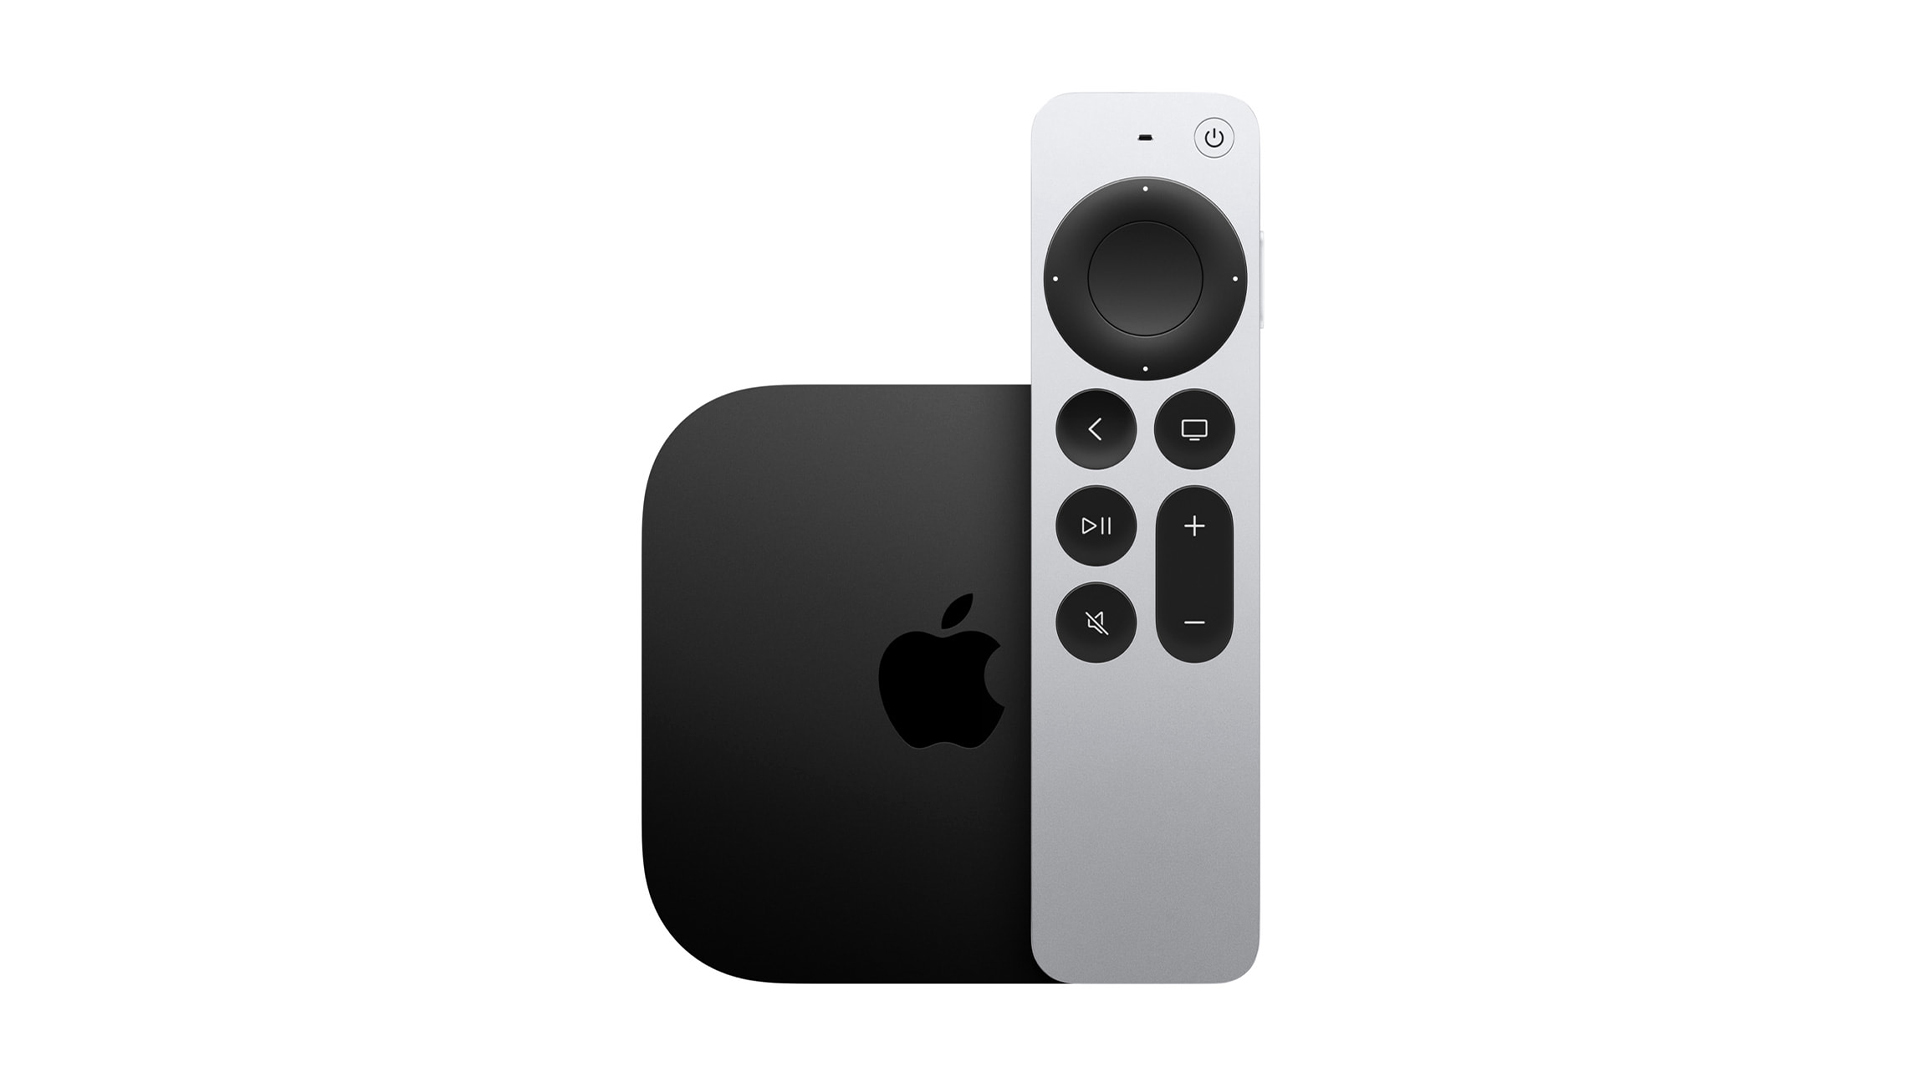 4K TV streamer: Apple TV 4K